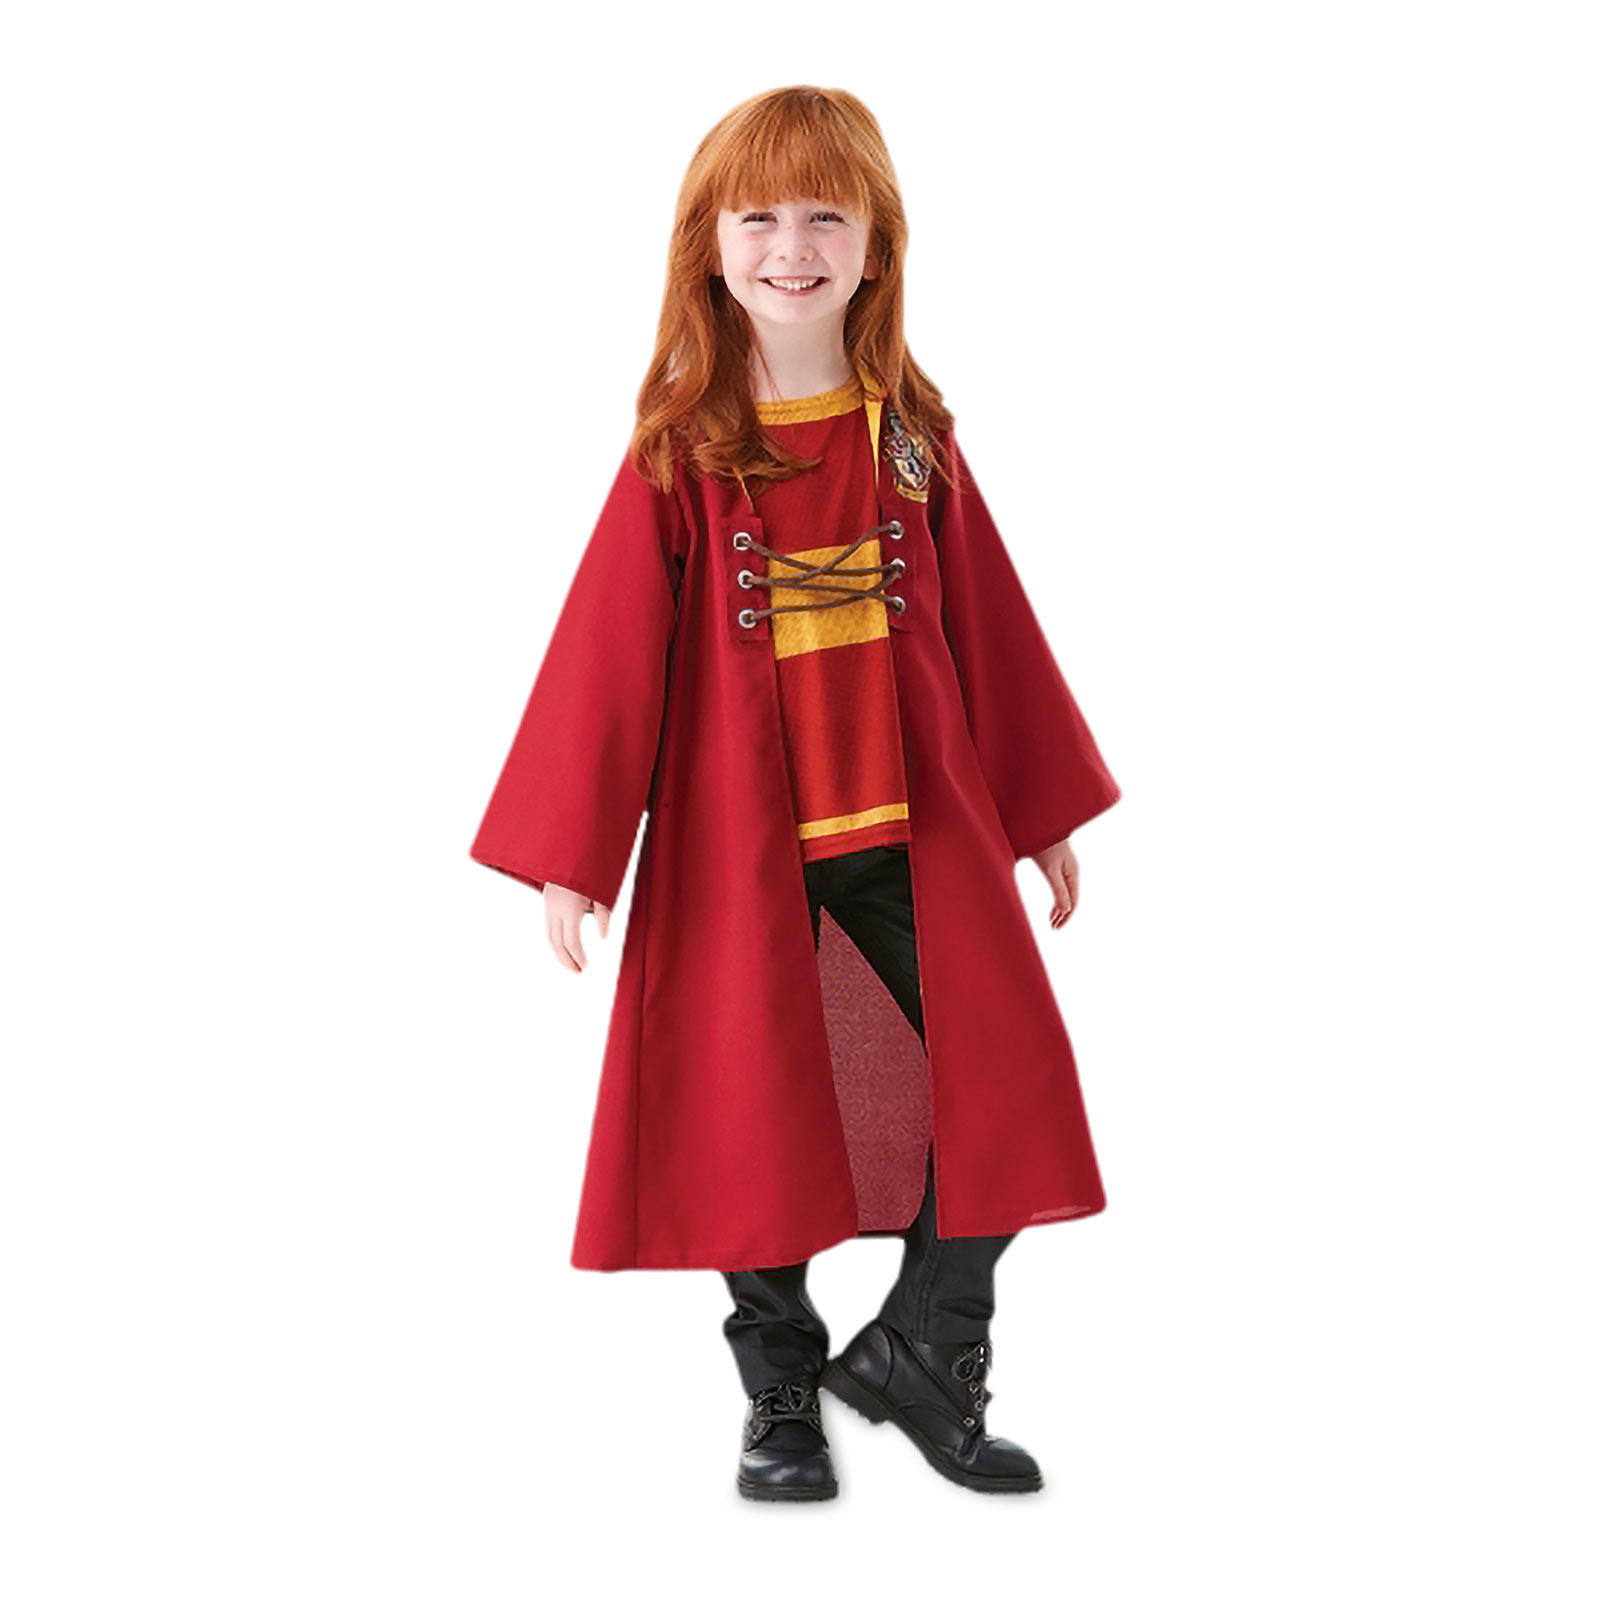 Harry Potter - Gryffindor Quidditch Robe Children's Costume